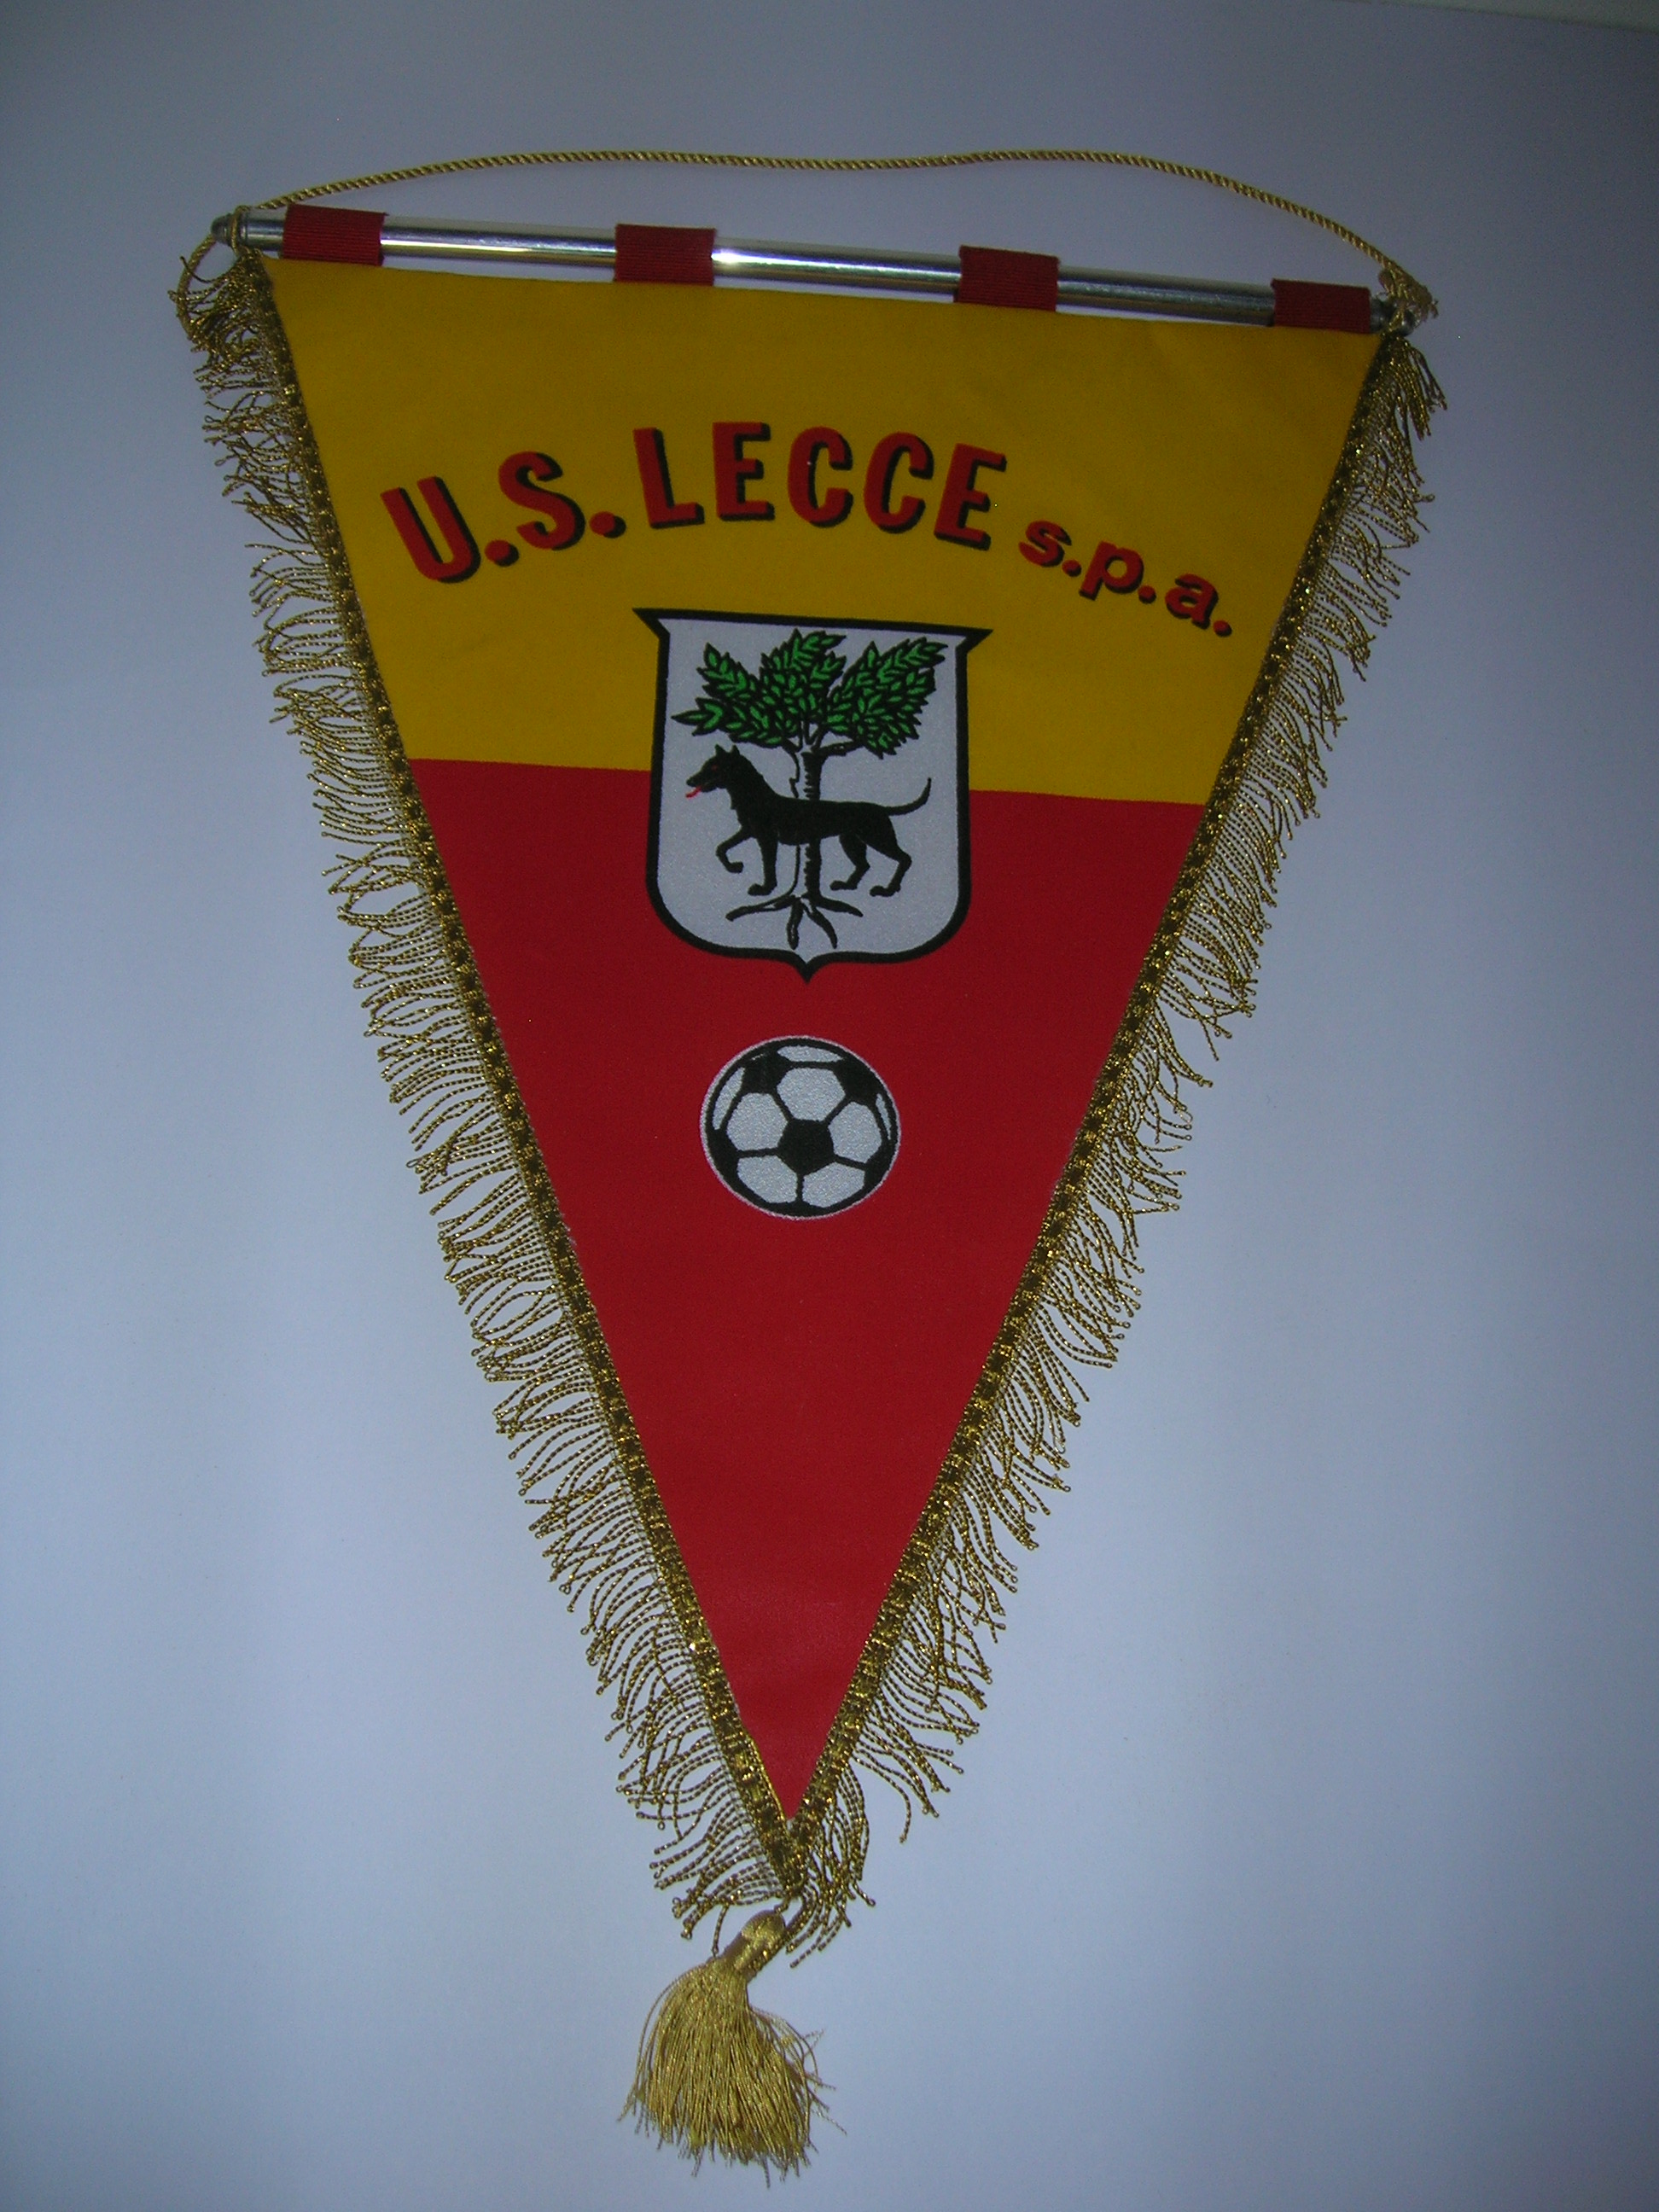 U.S.  Lecce  spa